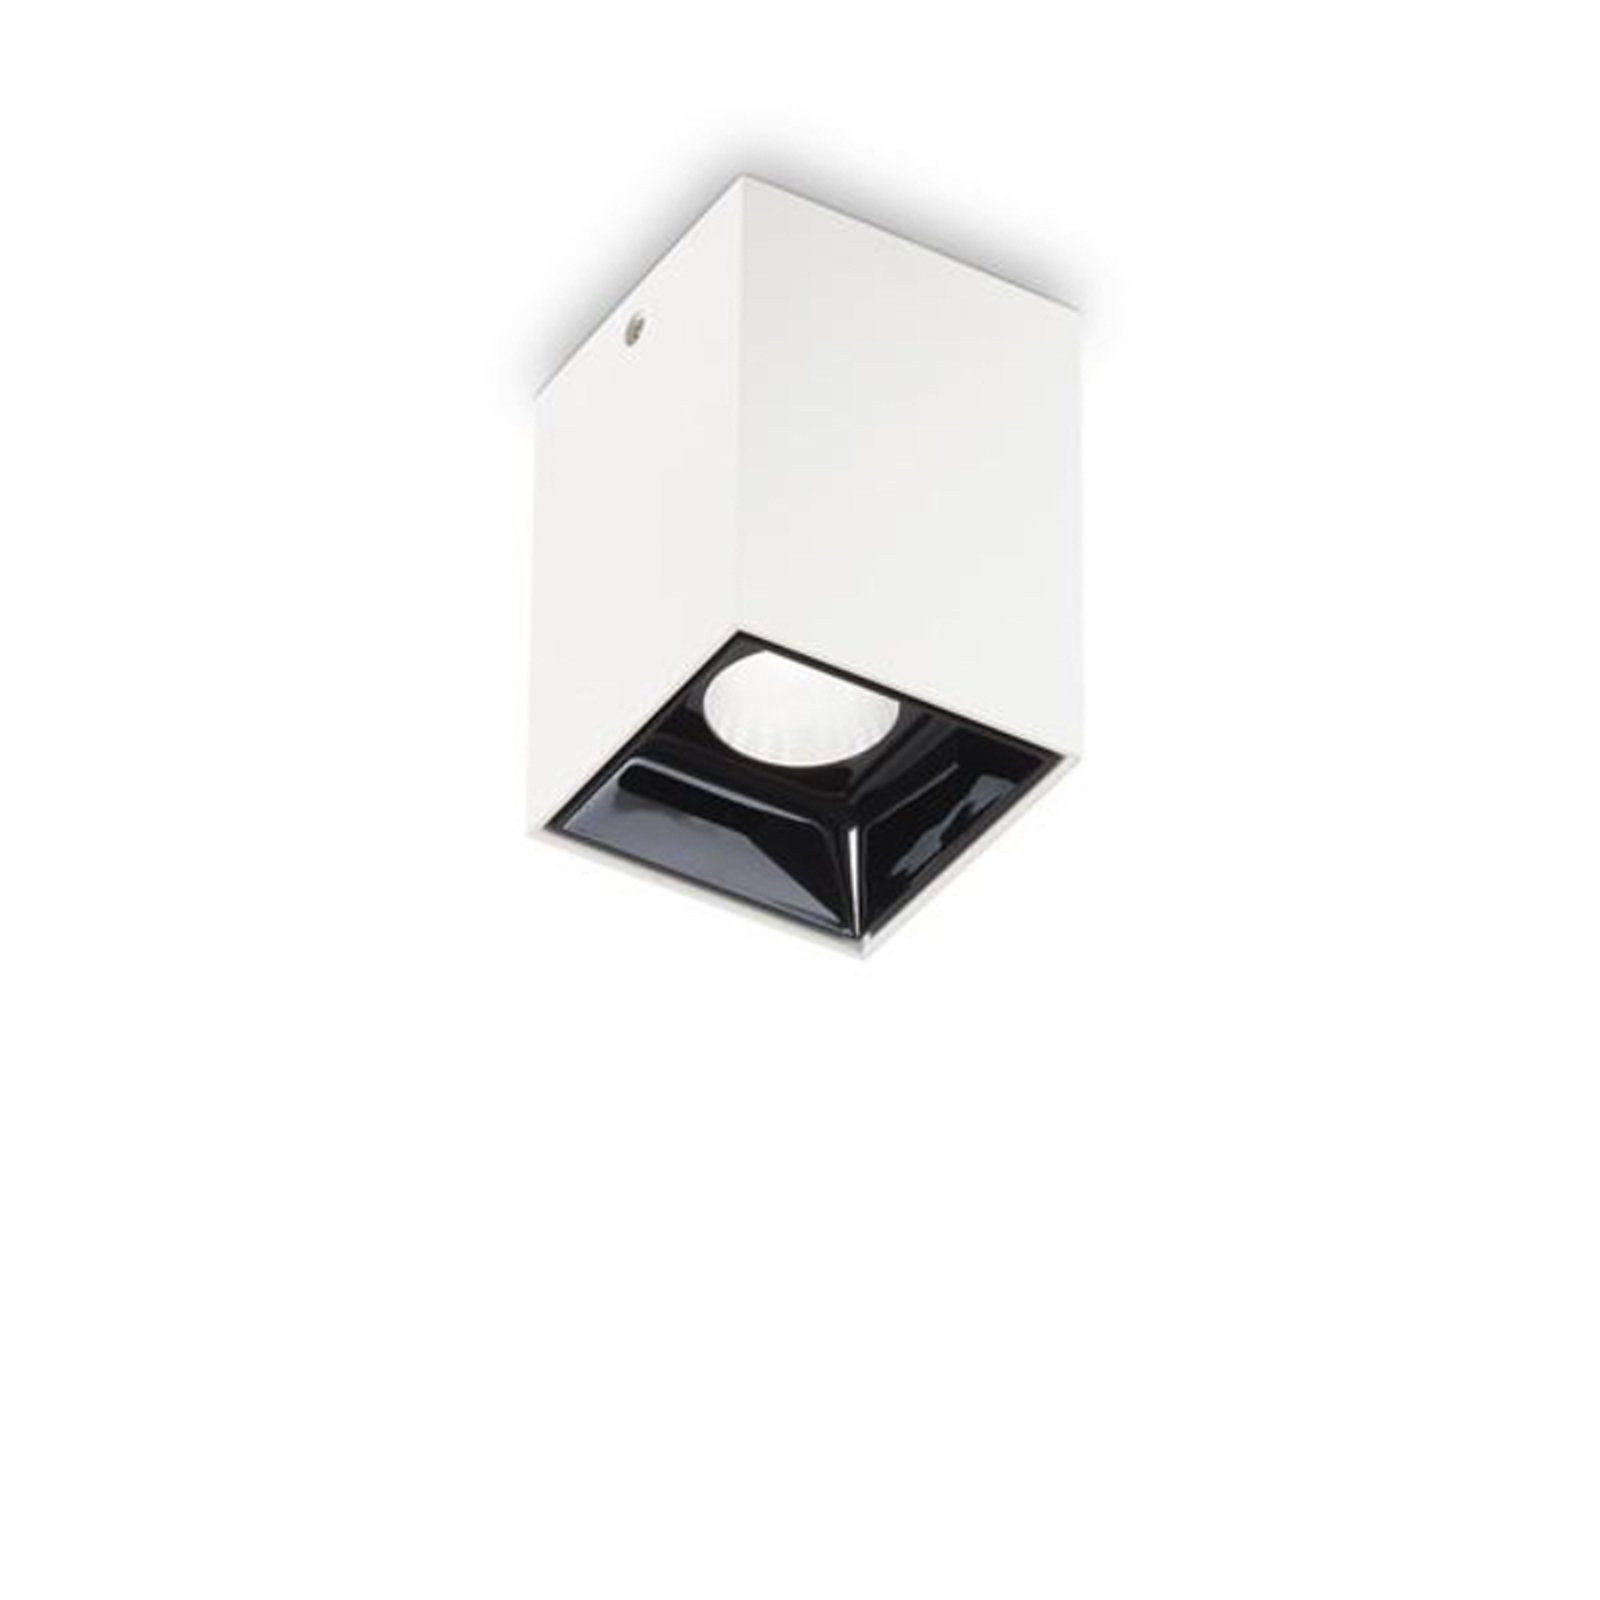 Ideal Lux LED-downlight Nitro Square valkoinen, korkeus 9 cm, metallia